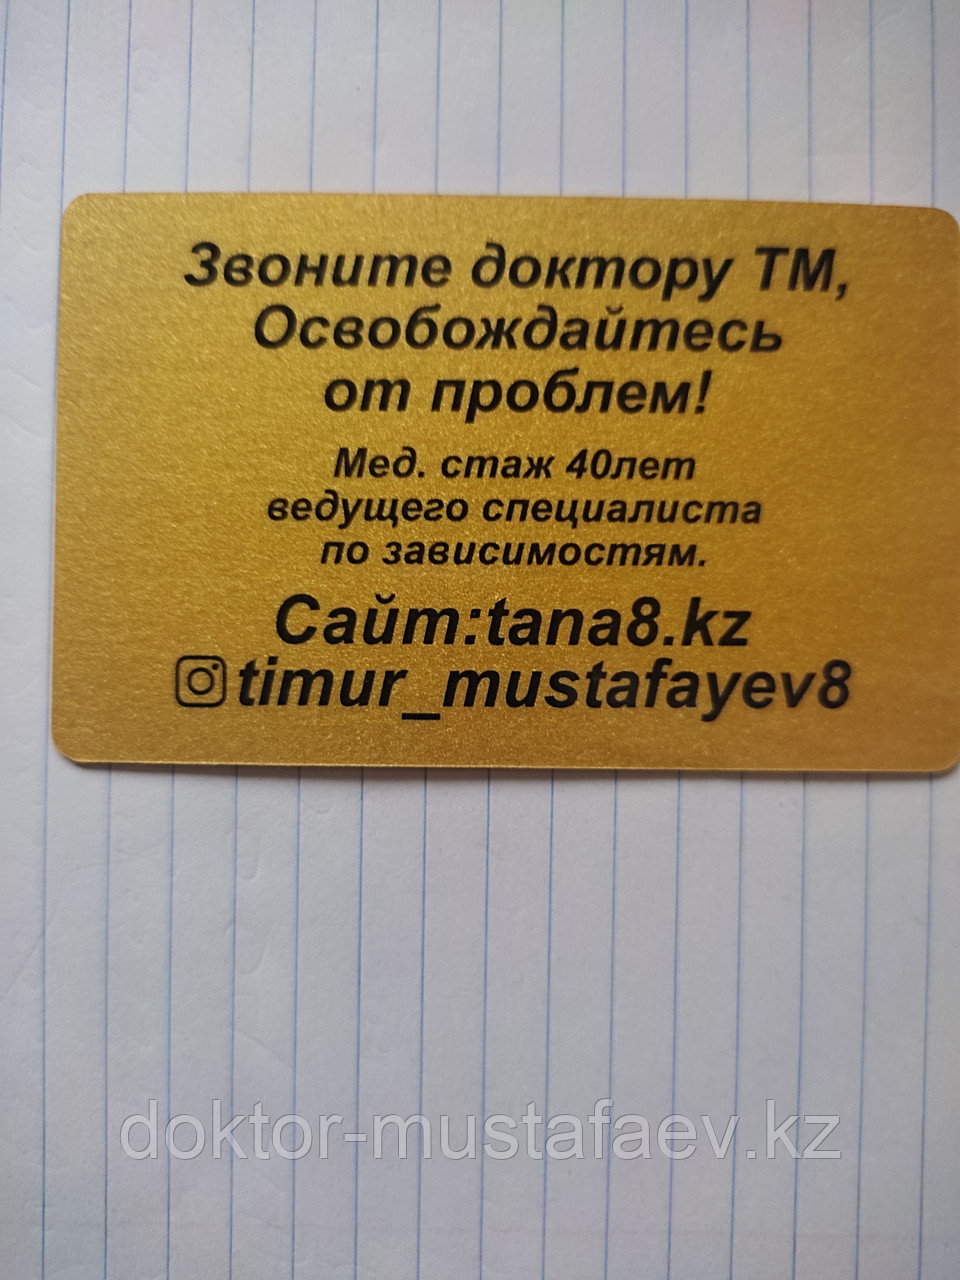 Эффективное кодирование в Алматы  или лечение без кодирования у опытного психотерапевта  doktor-mustafaev.kz